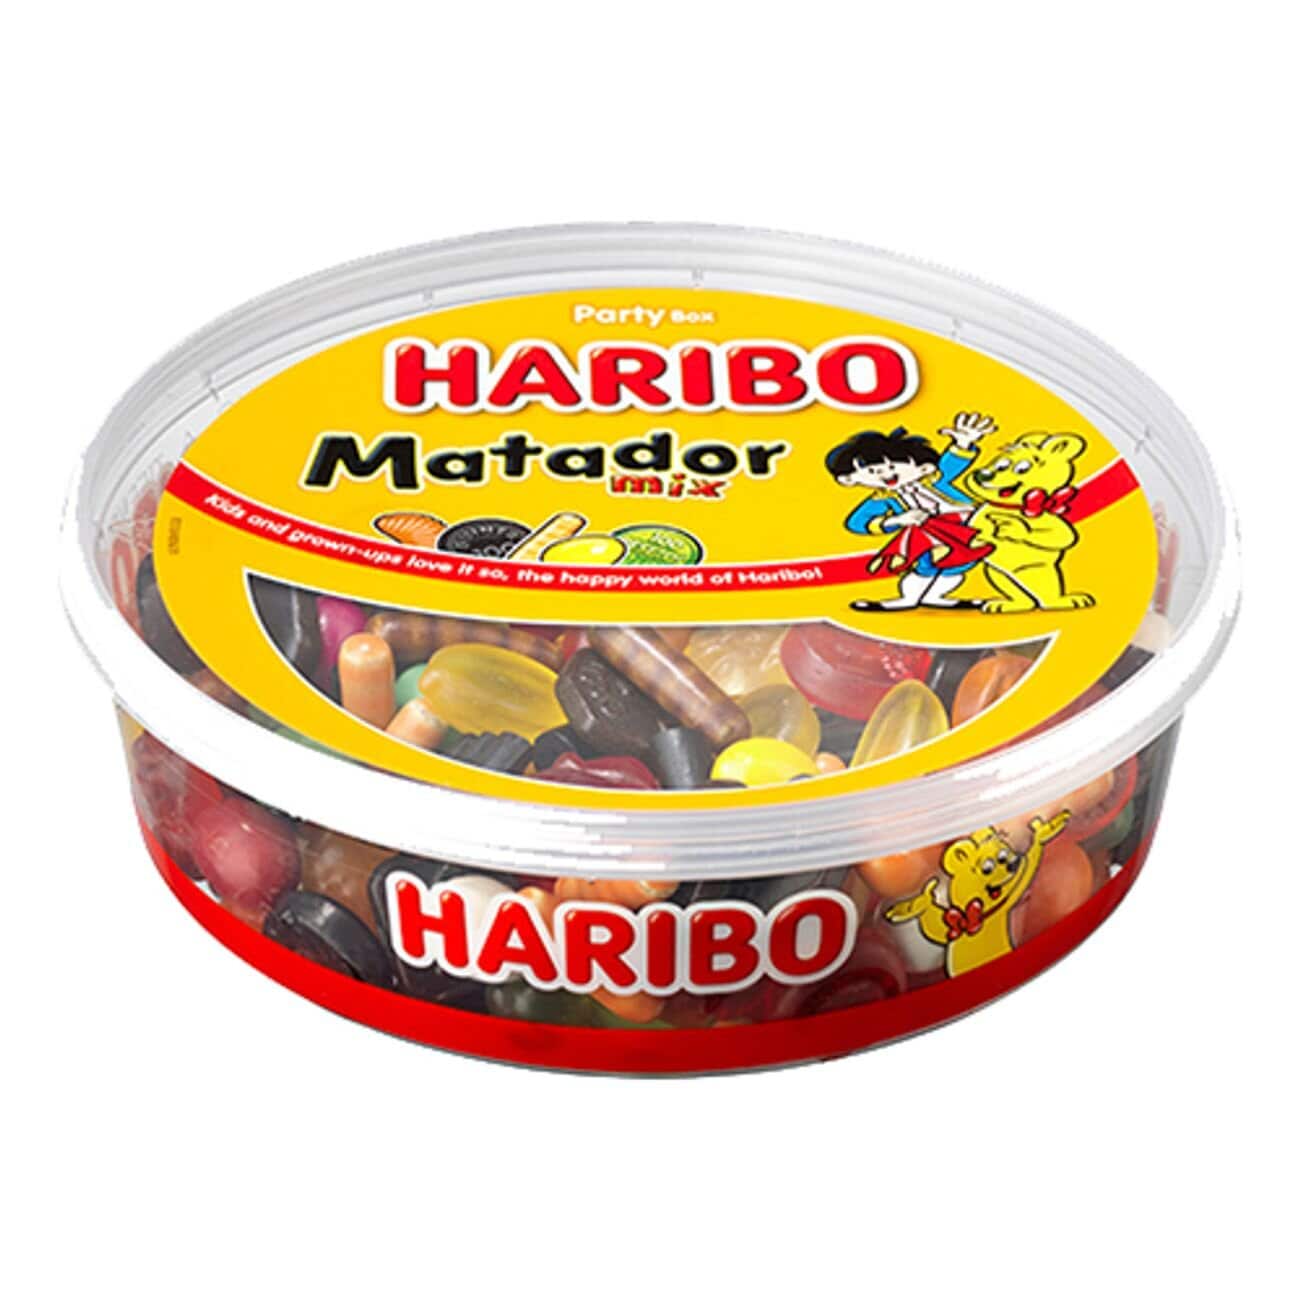 Haribo Matador Mix 1 kilo